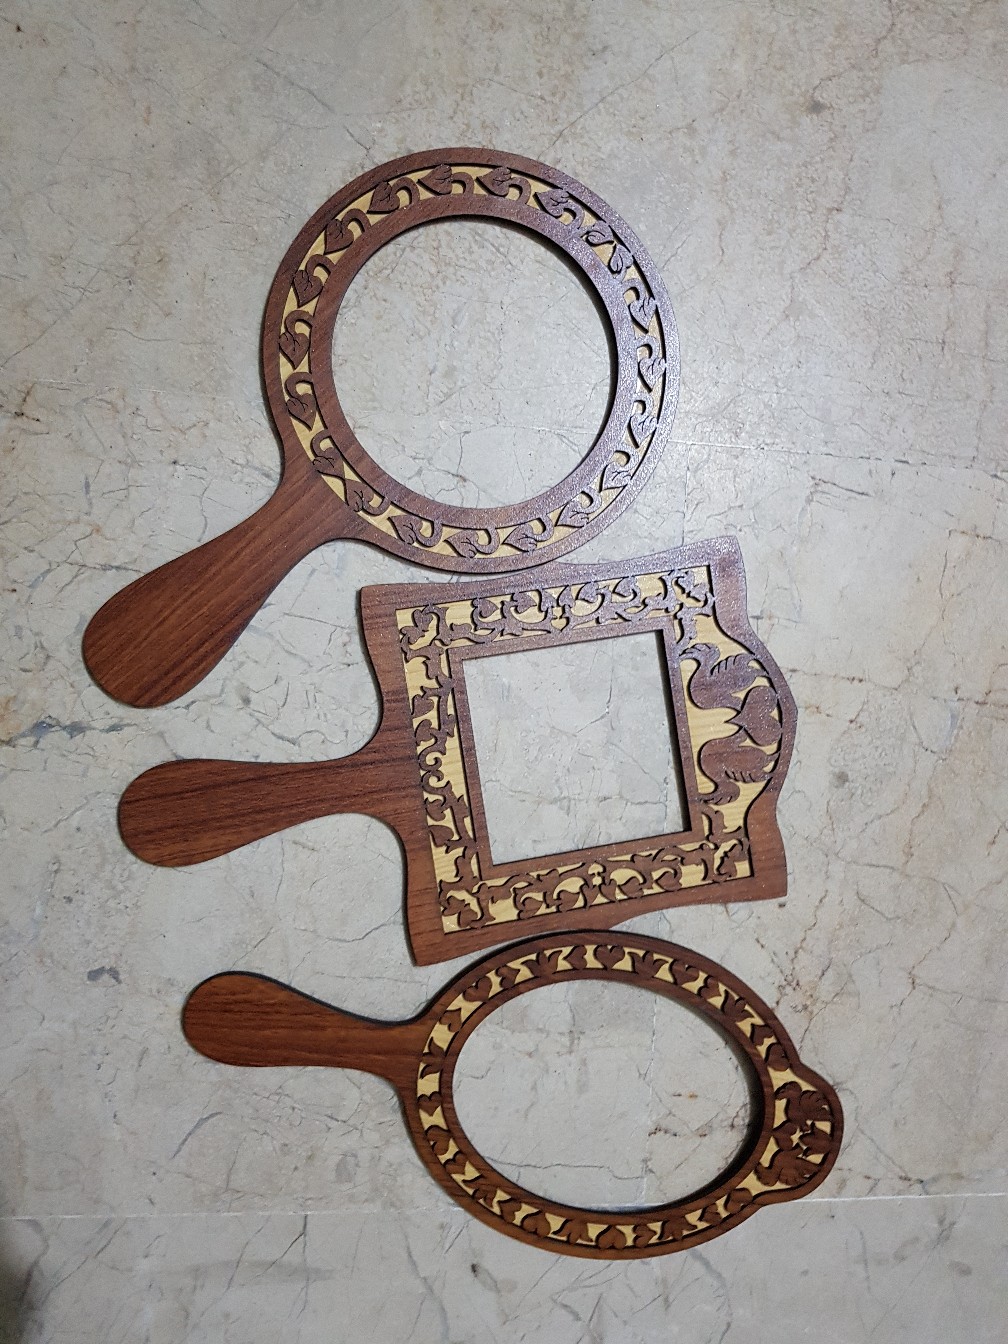 Modelos de serra de rolagem para espelhos de mão